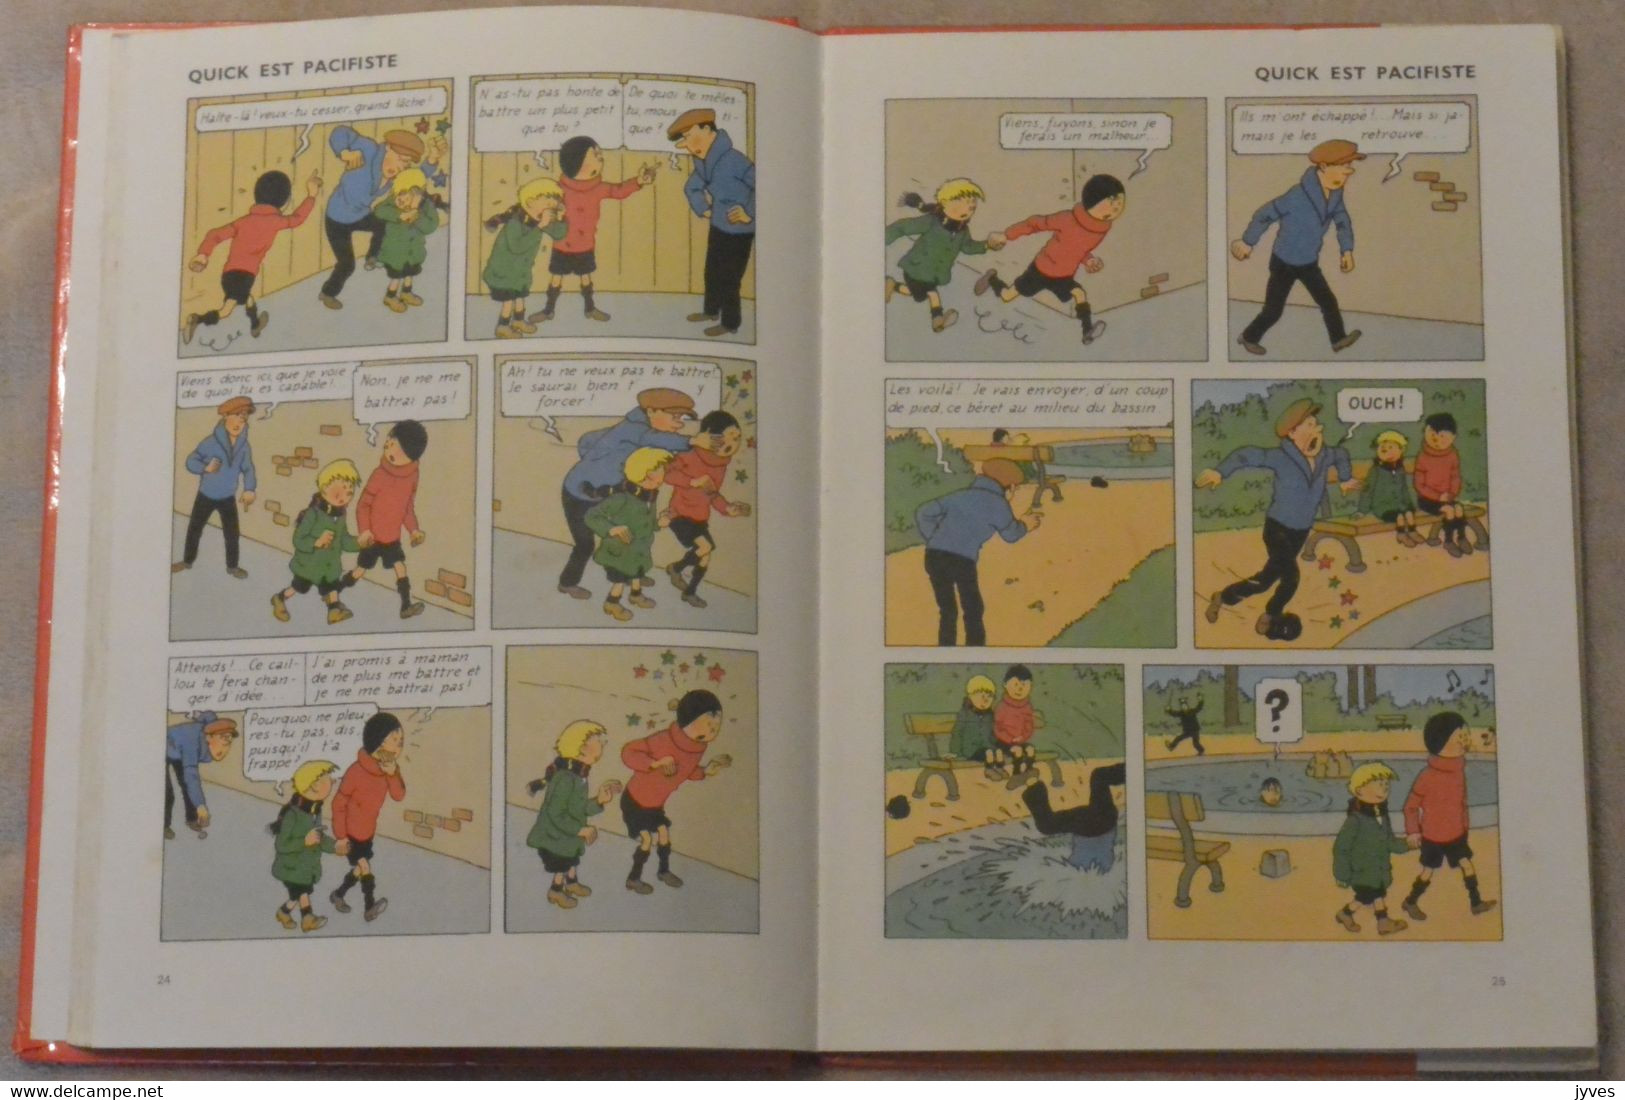 Les Exploits De Quick Et Flupke - Hergé - Quick Et Flupke